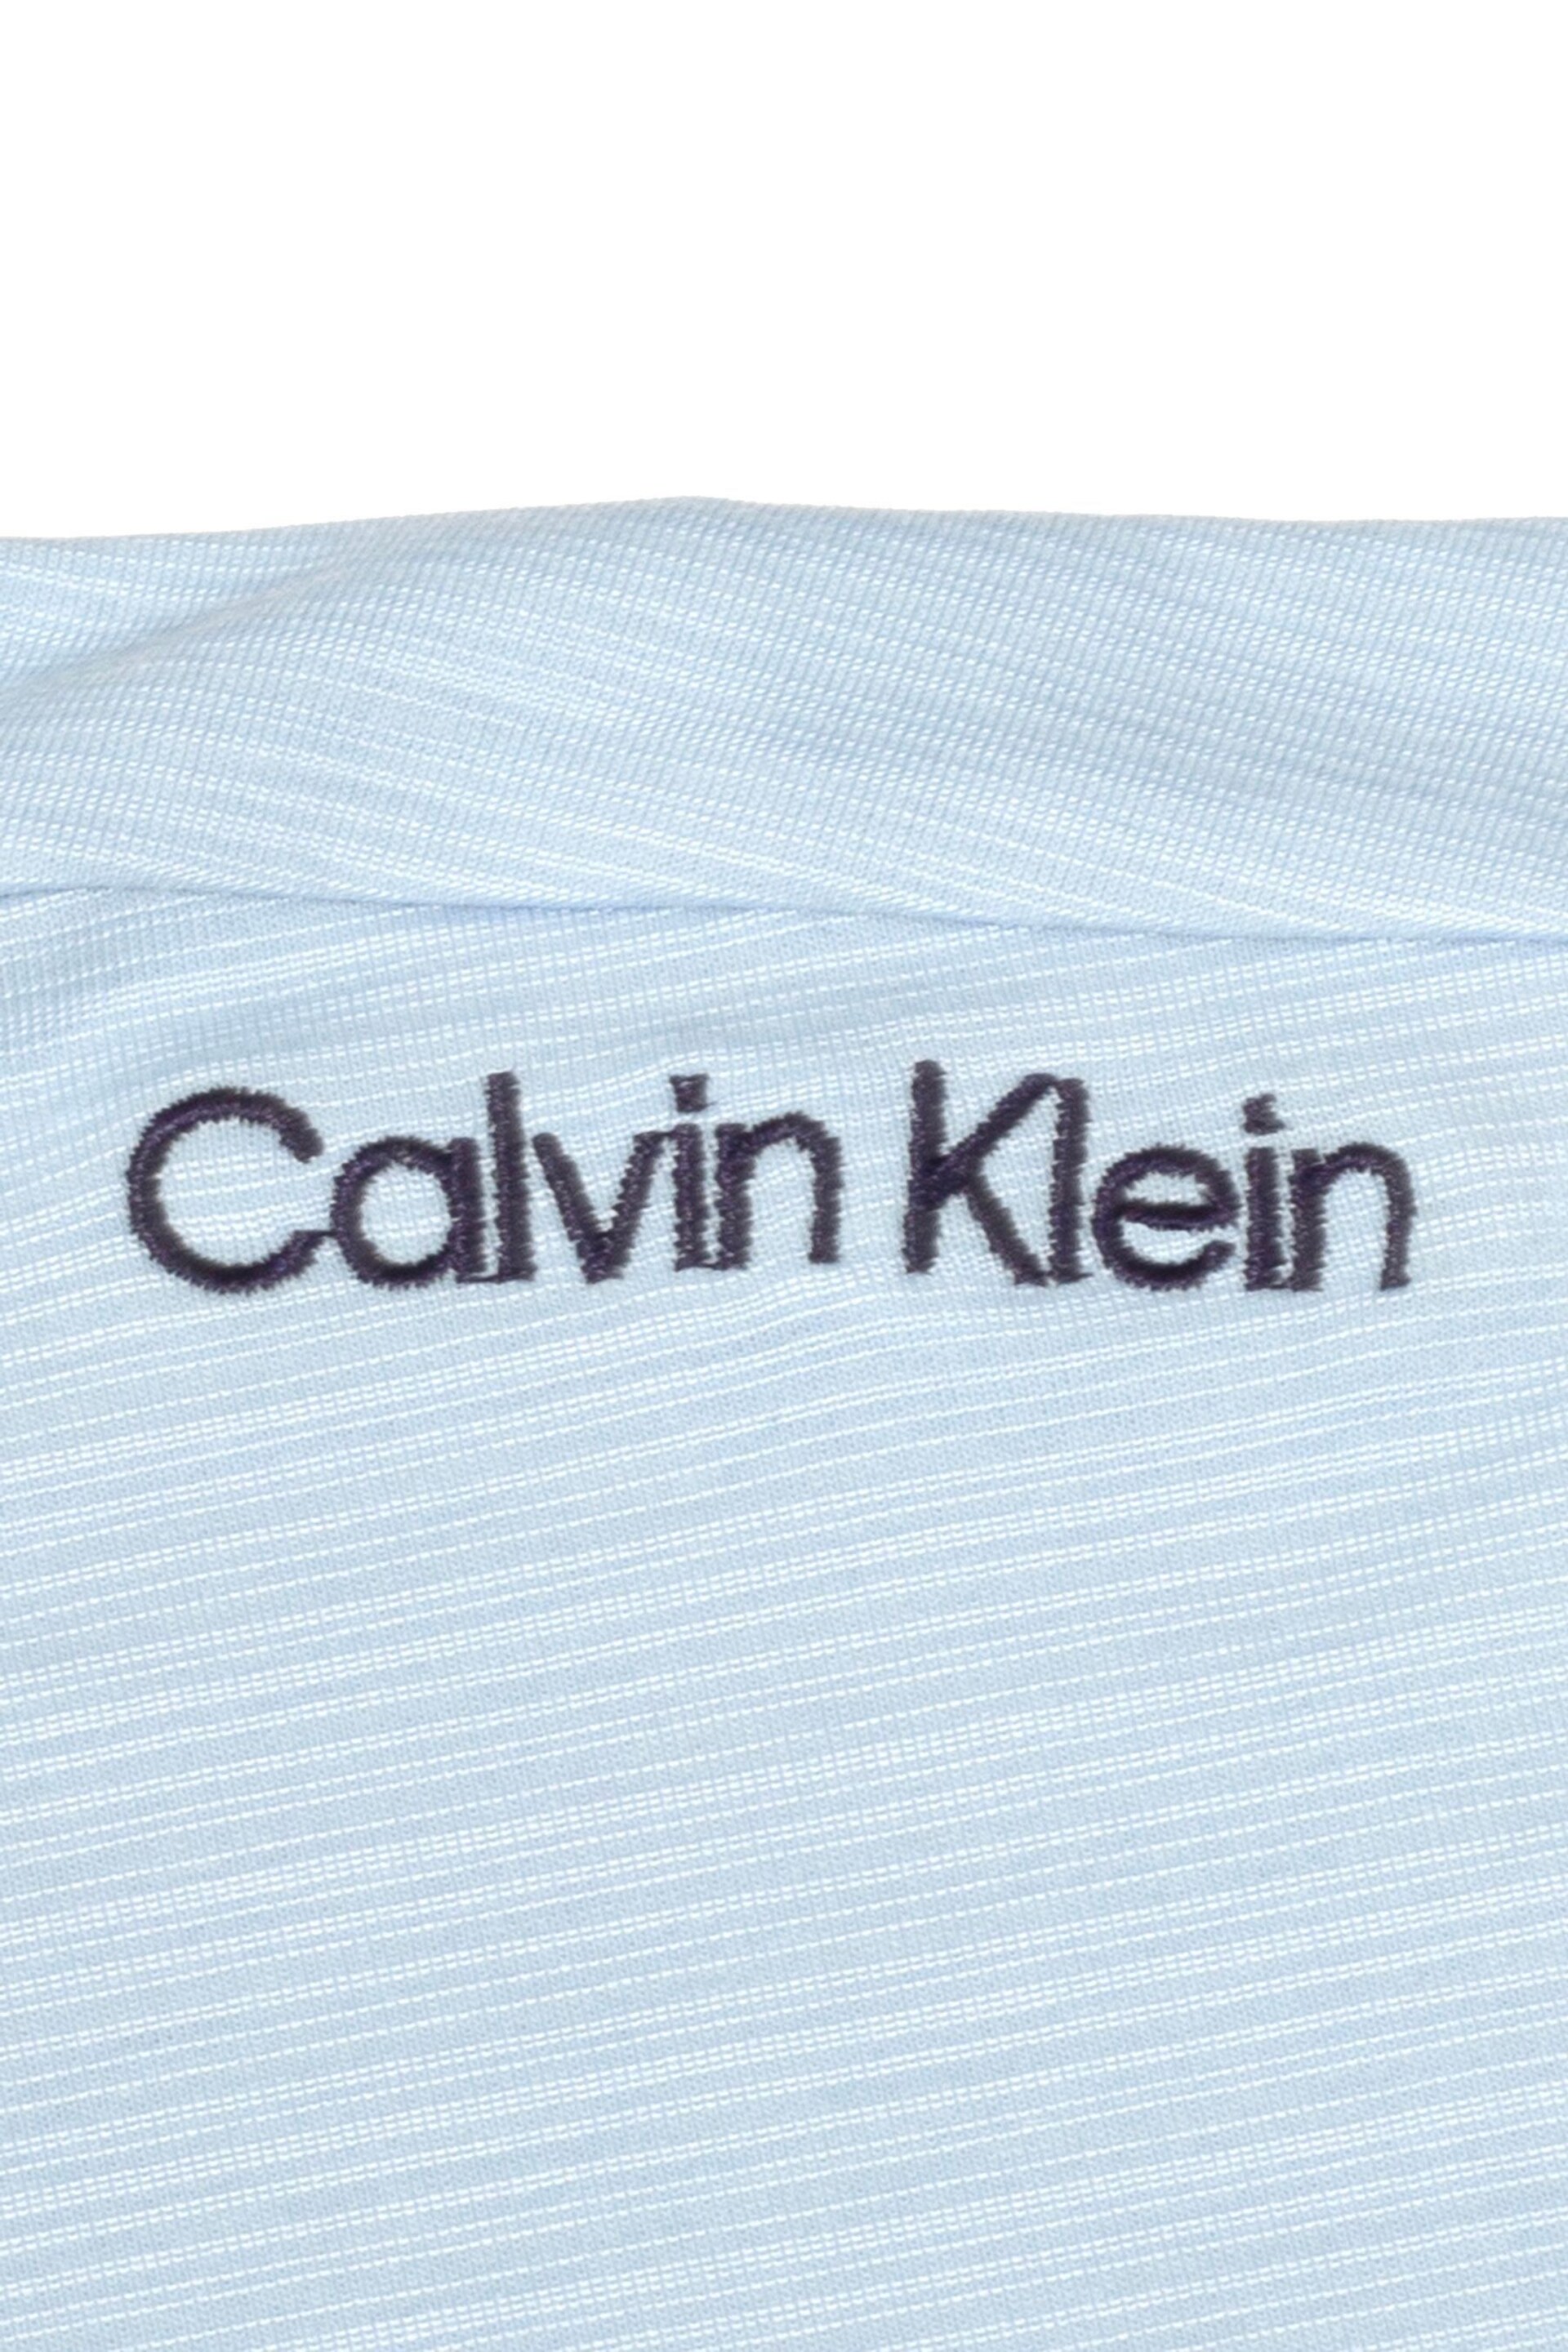 Calvin Klein Golf Navy Parramore Polo Shirt - Image 7 of 8